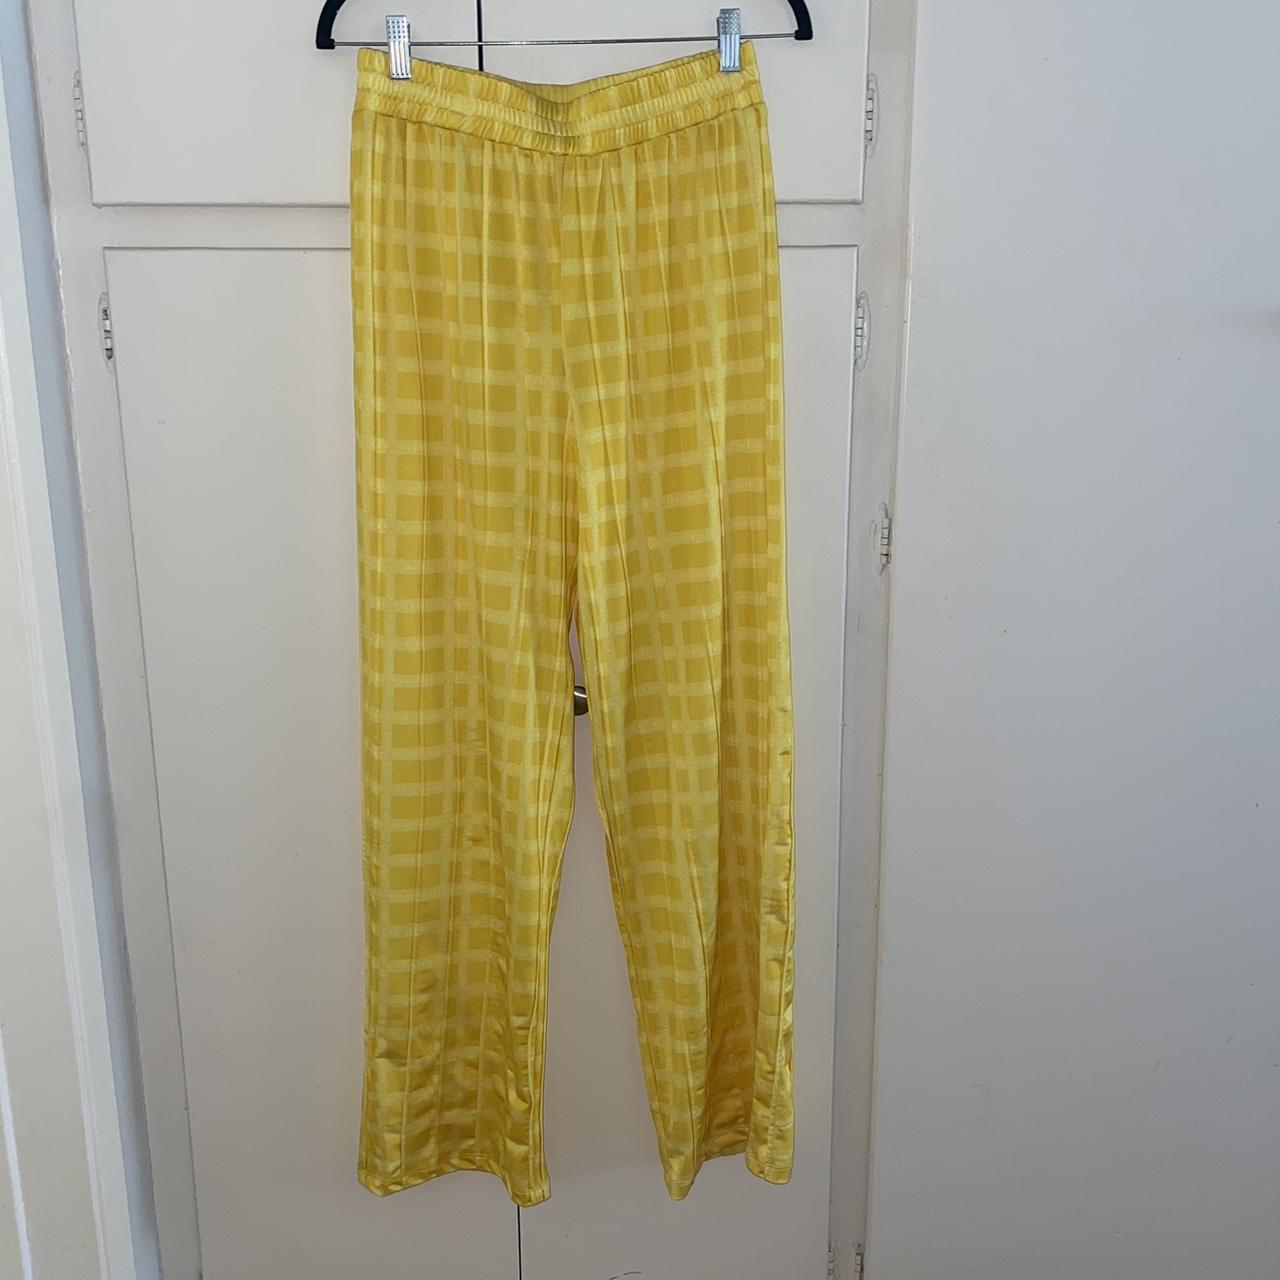 Hosbjerg Women's Yellow Trousers